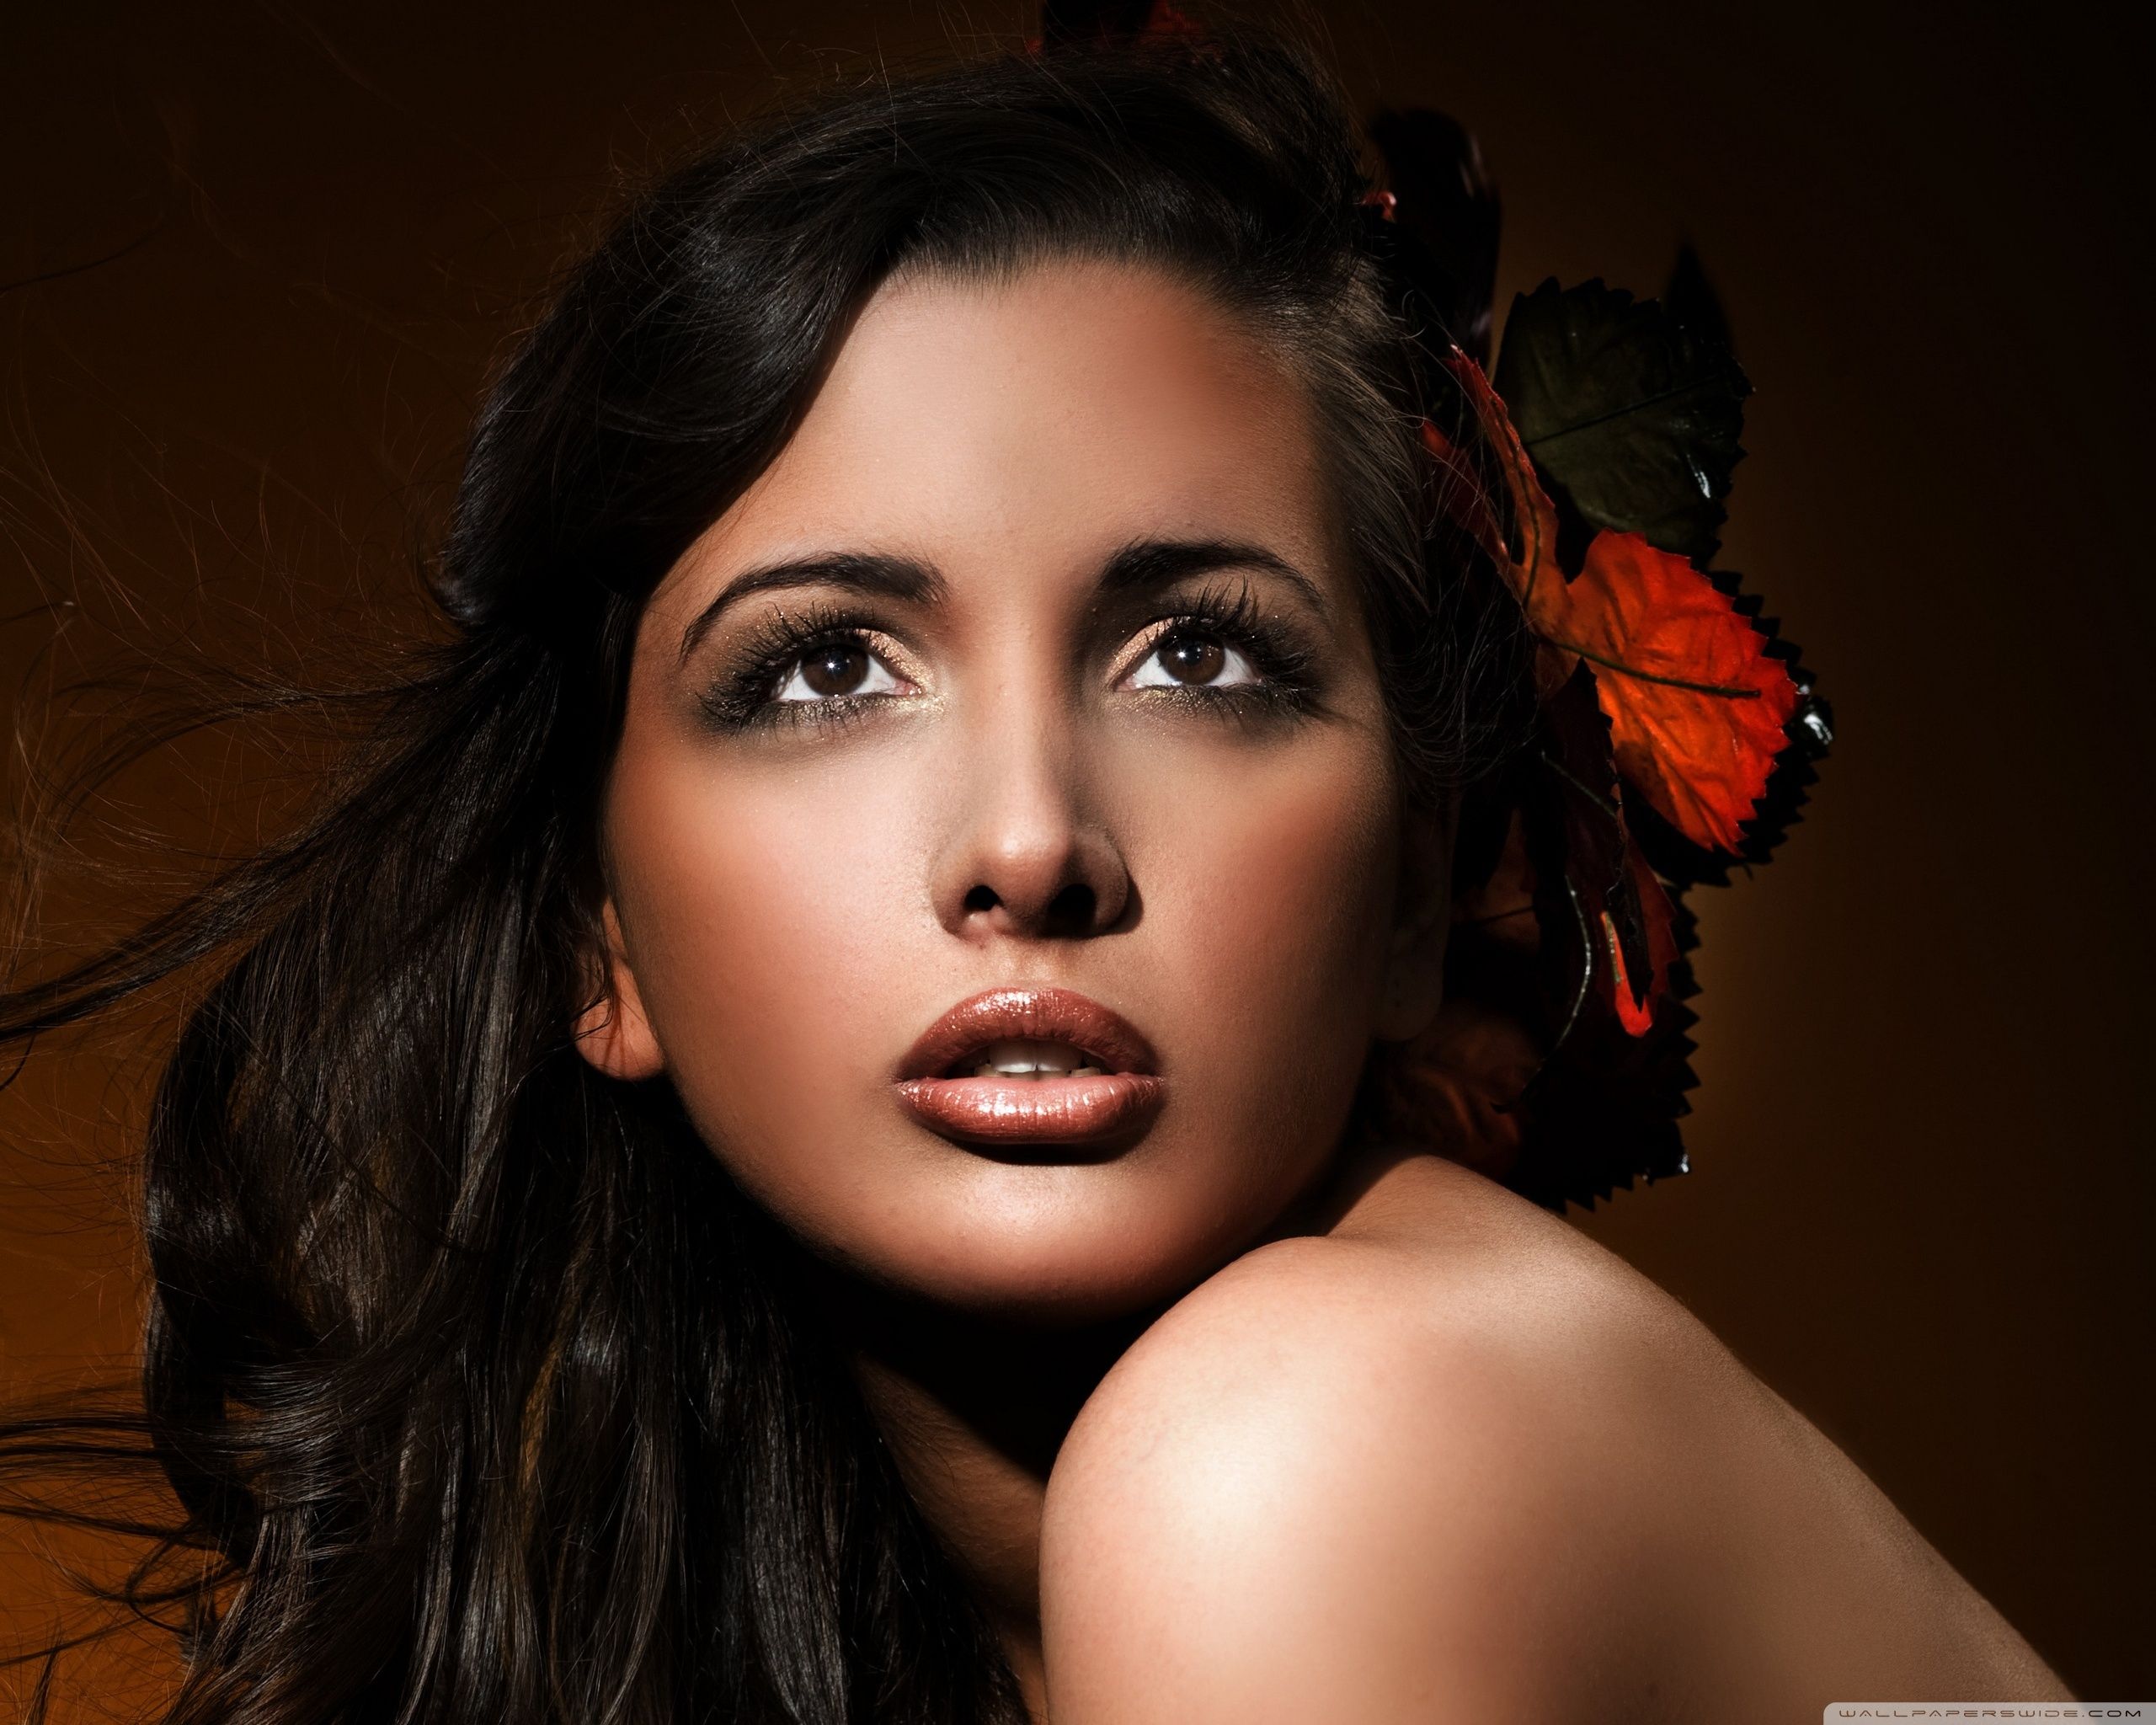 Beautiful Woman Portrait Ultra HD Desktop Background Wallpaper for 4K UHD TV, Tablet